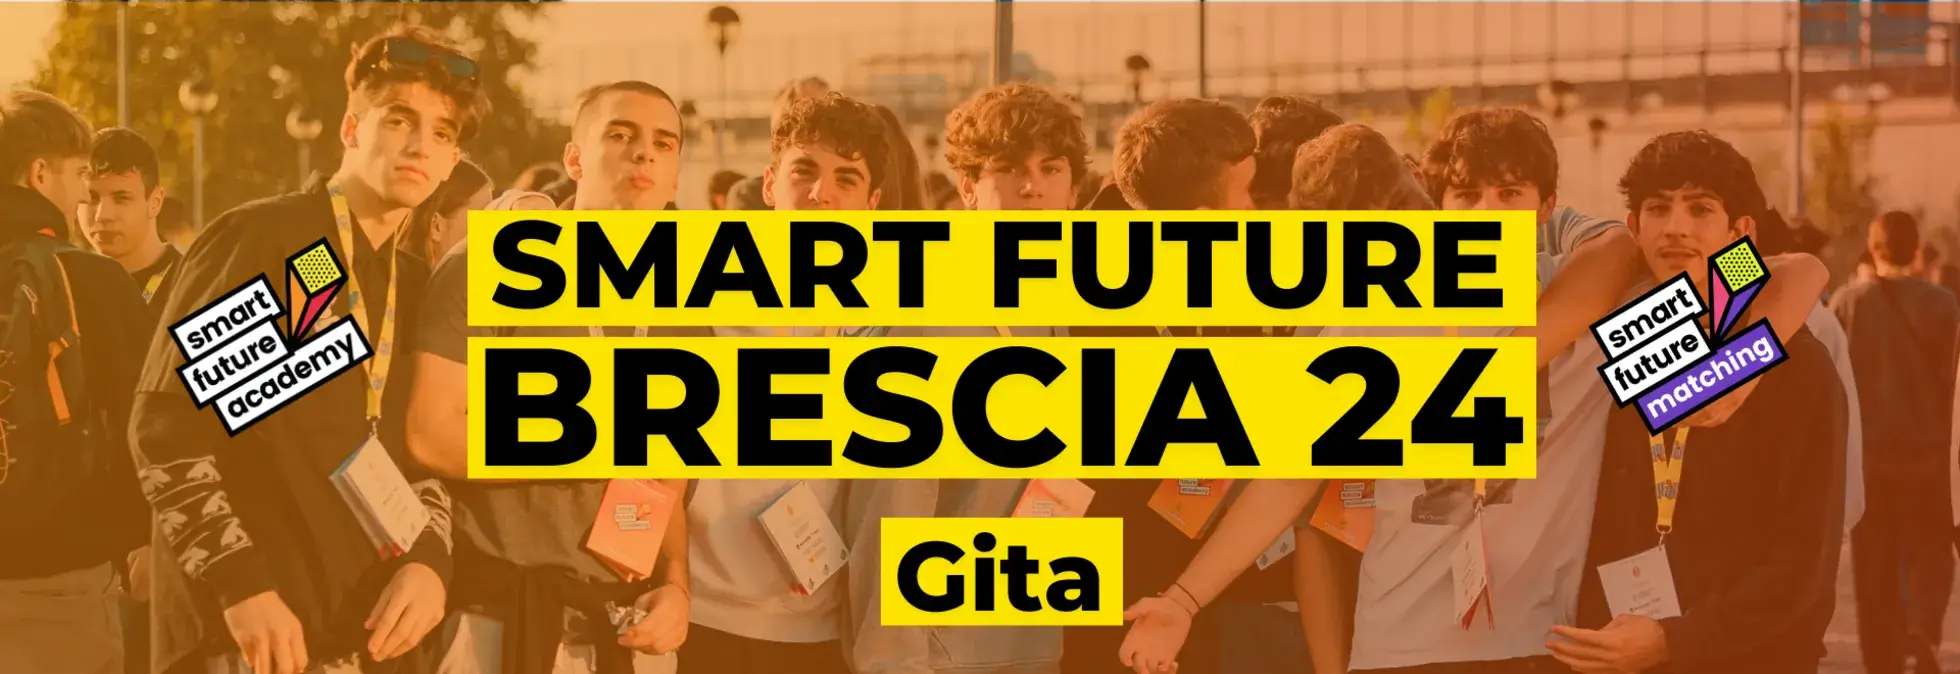 SMART FUTURE <br>BRESCIA 24-Gita<br><br> 2-3-4 ottobre 2024